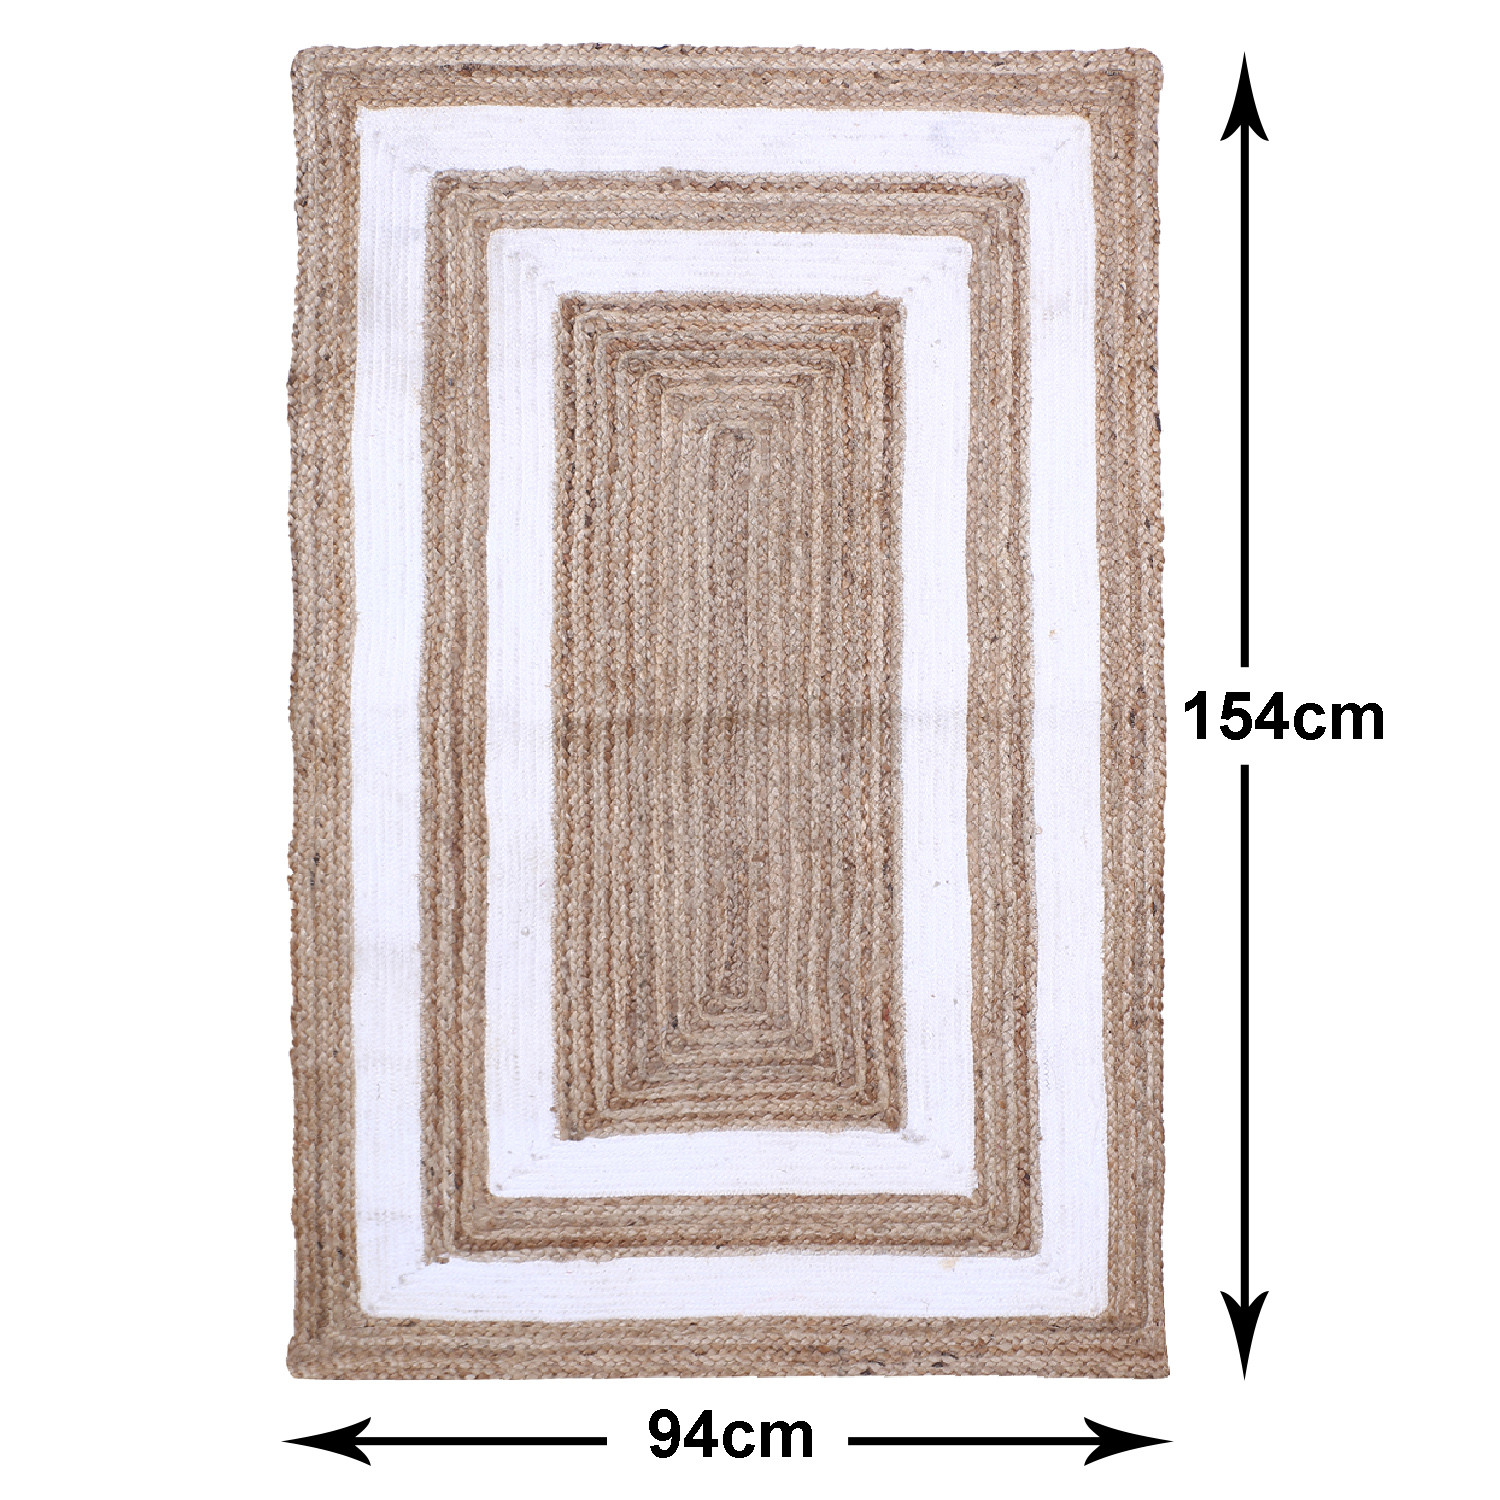 Kuber Industries Hand Woven Carpet|Jute Rectangular Shape Centre Table Dhurrie|Striped Floor Door Mat For Furnish Living Room,Bedroom,5x3 Feet,(White)